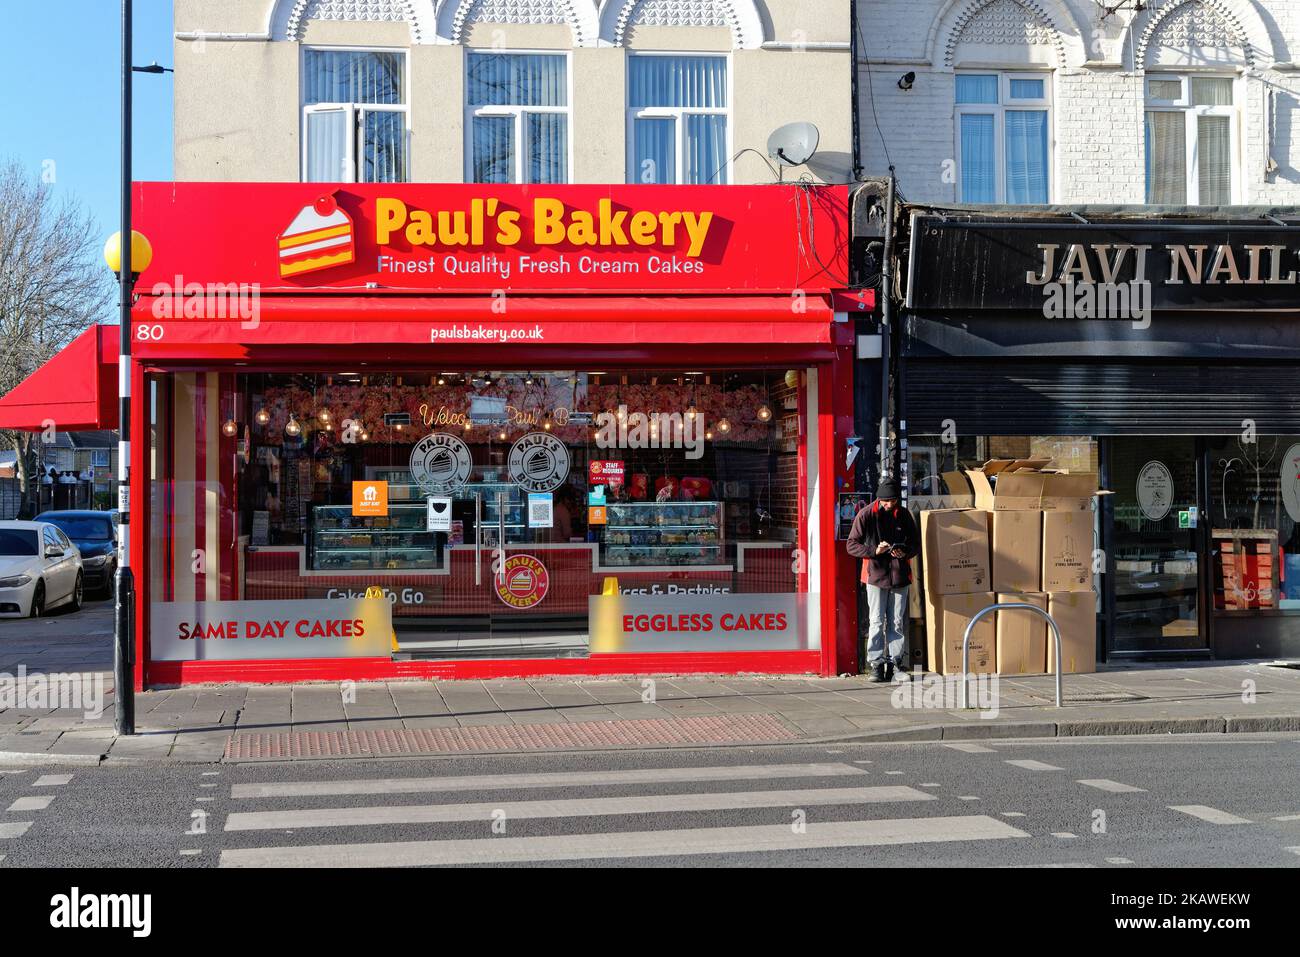 Colorati negozi multiculturali a Southall Greater London Inghilterra Regno Unito Foto Stock